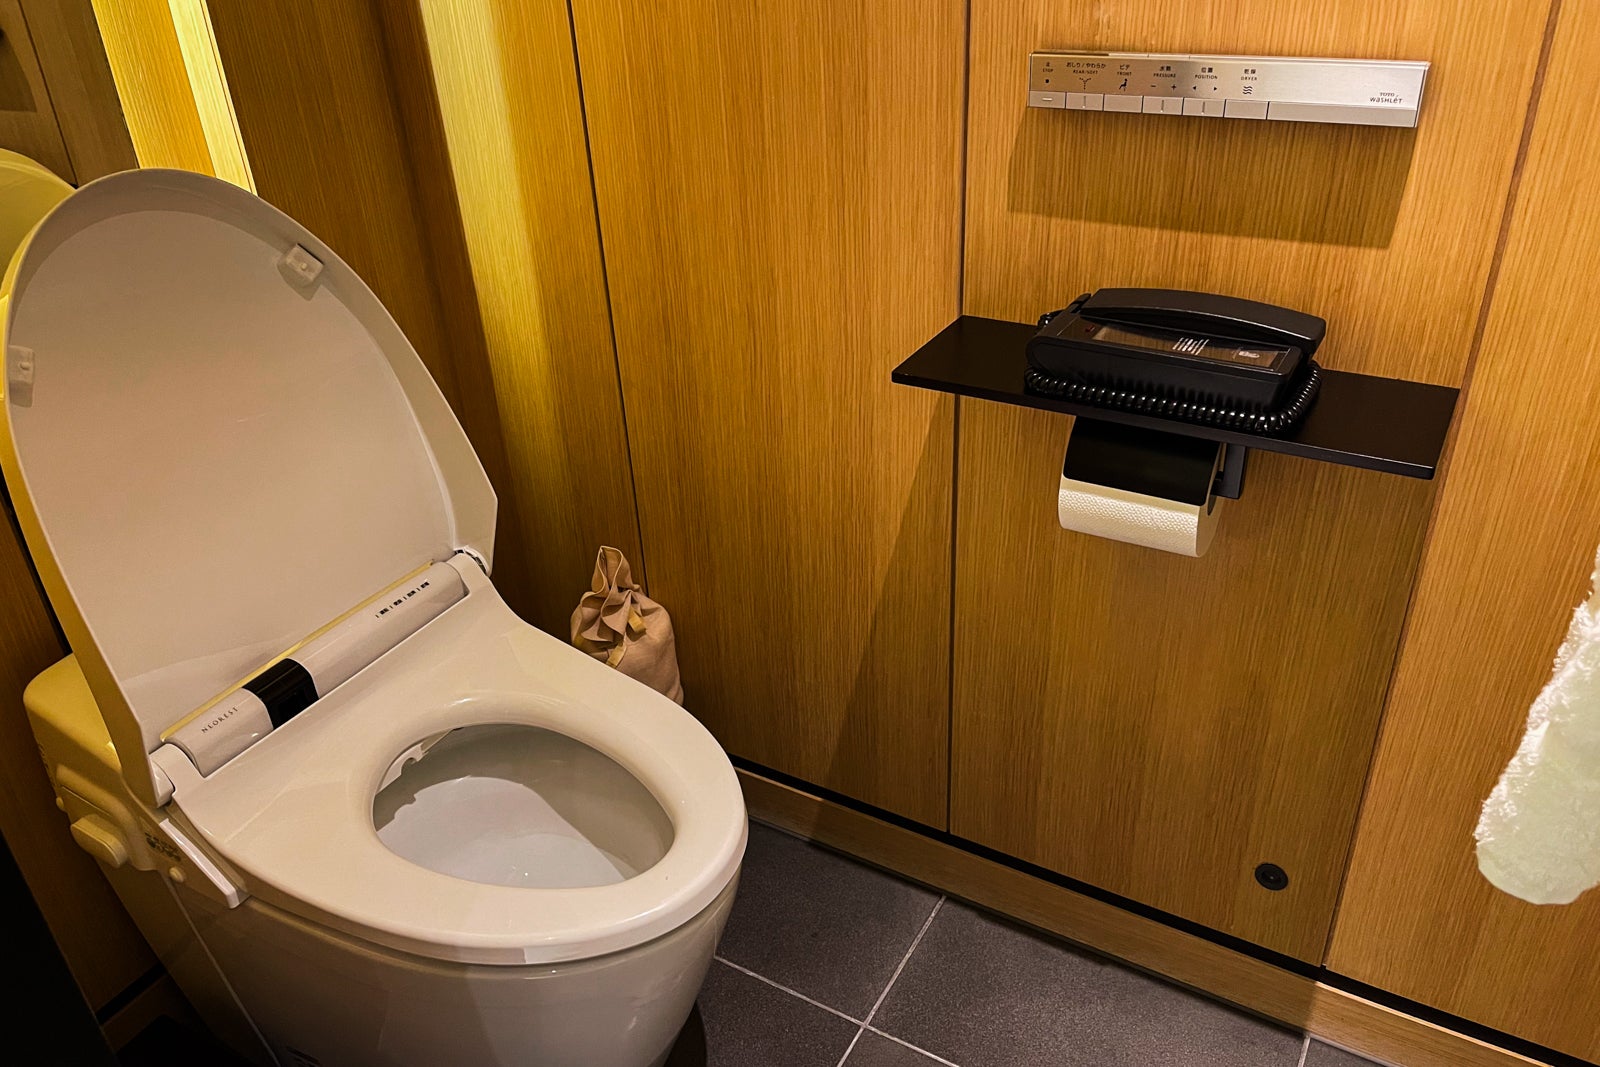 Toto toilet at The Ritz-Carlton, Kyoto